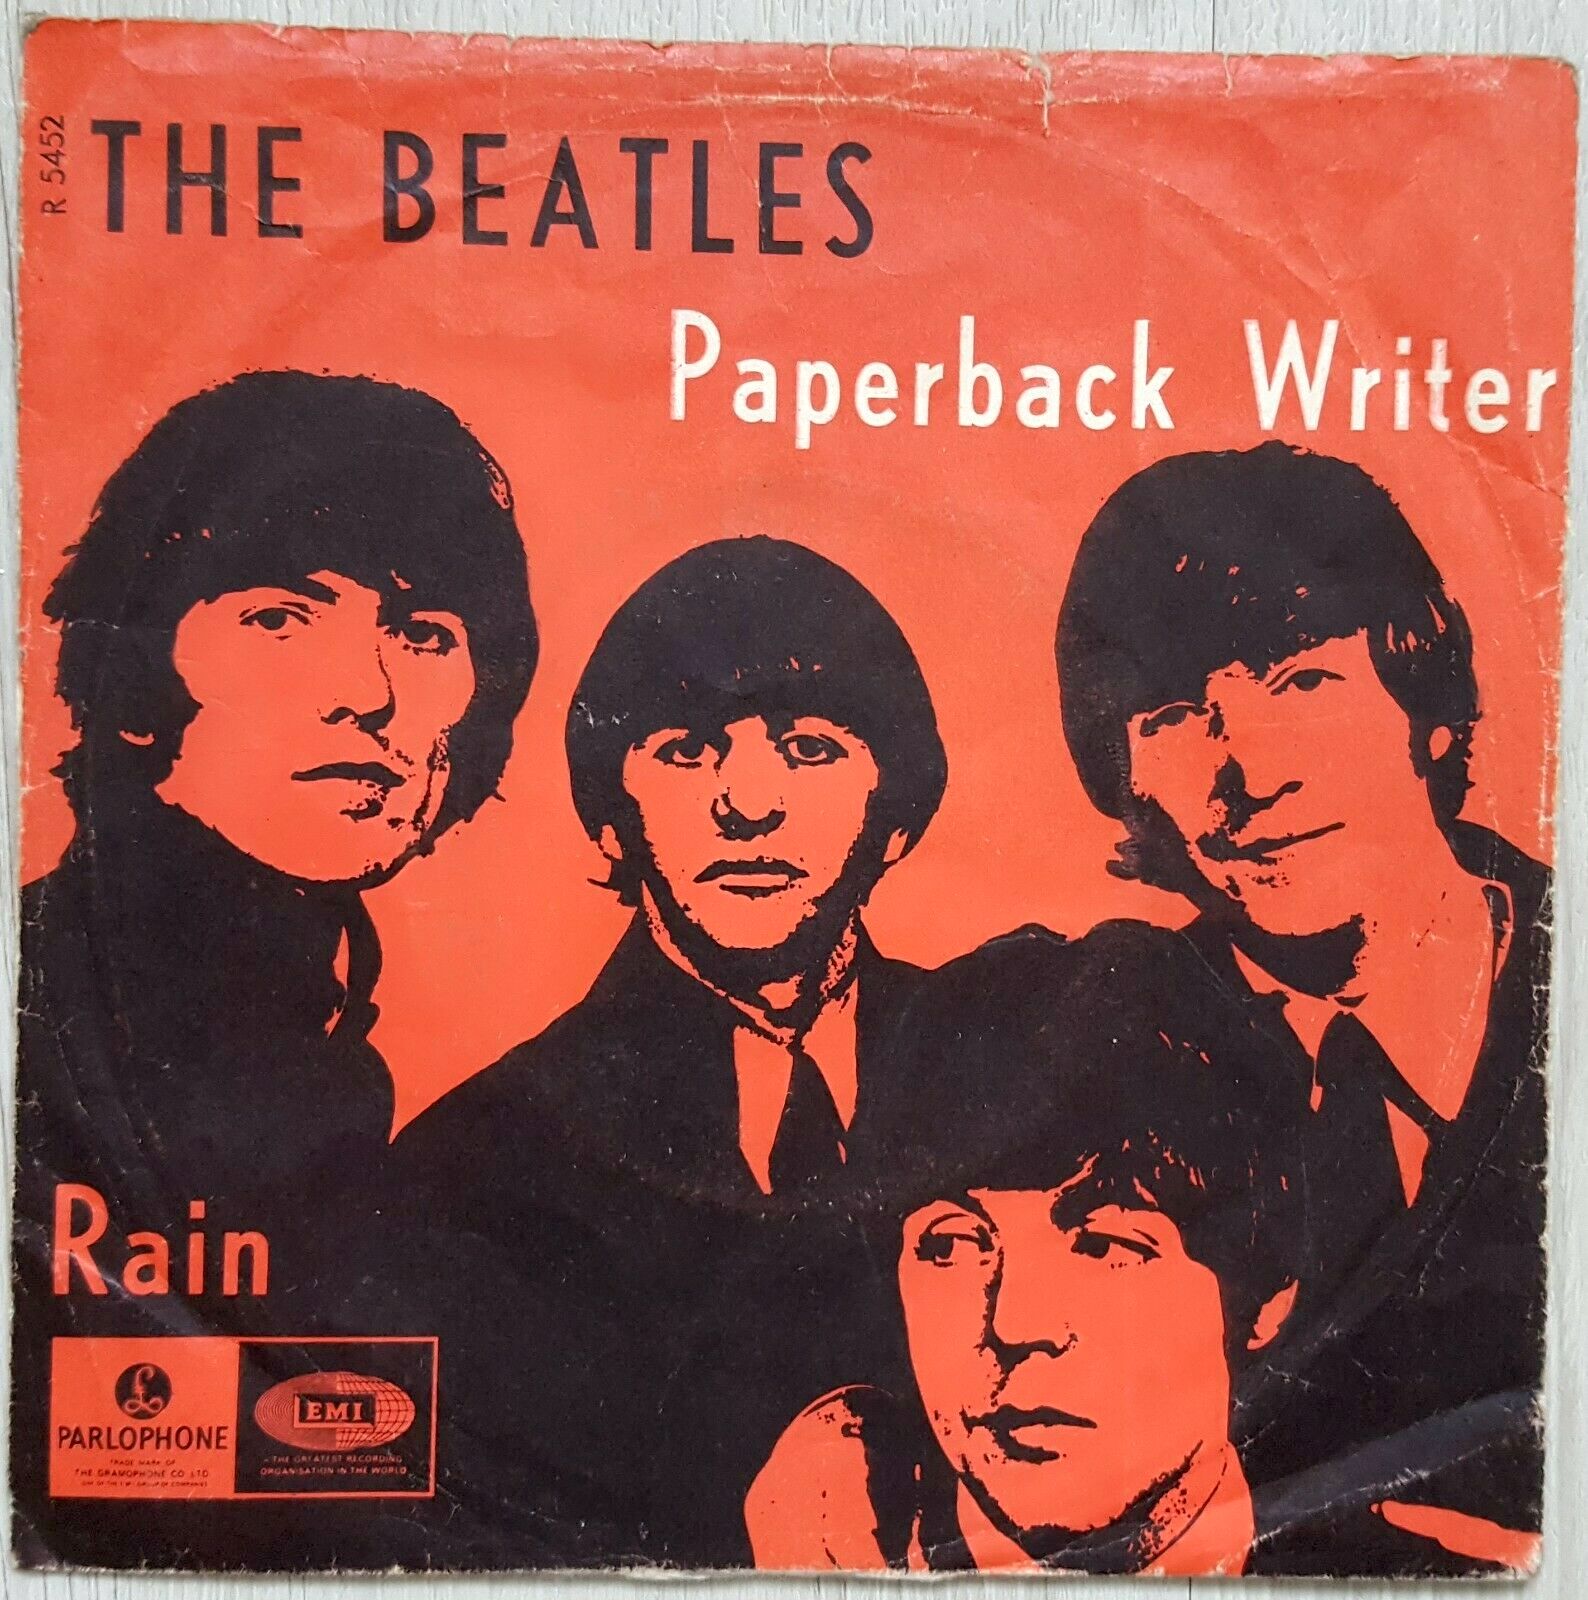 Каверы битлз. Битлз 1966. The Beatles Paperback writer. The Beatles album обложка. Beatles Rain обложка.